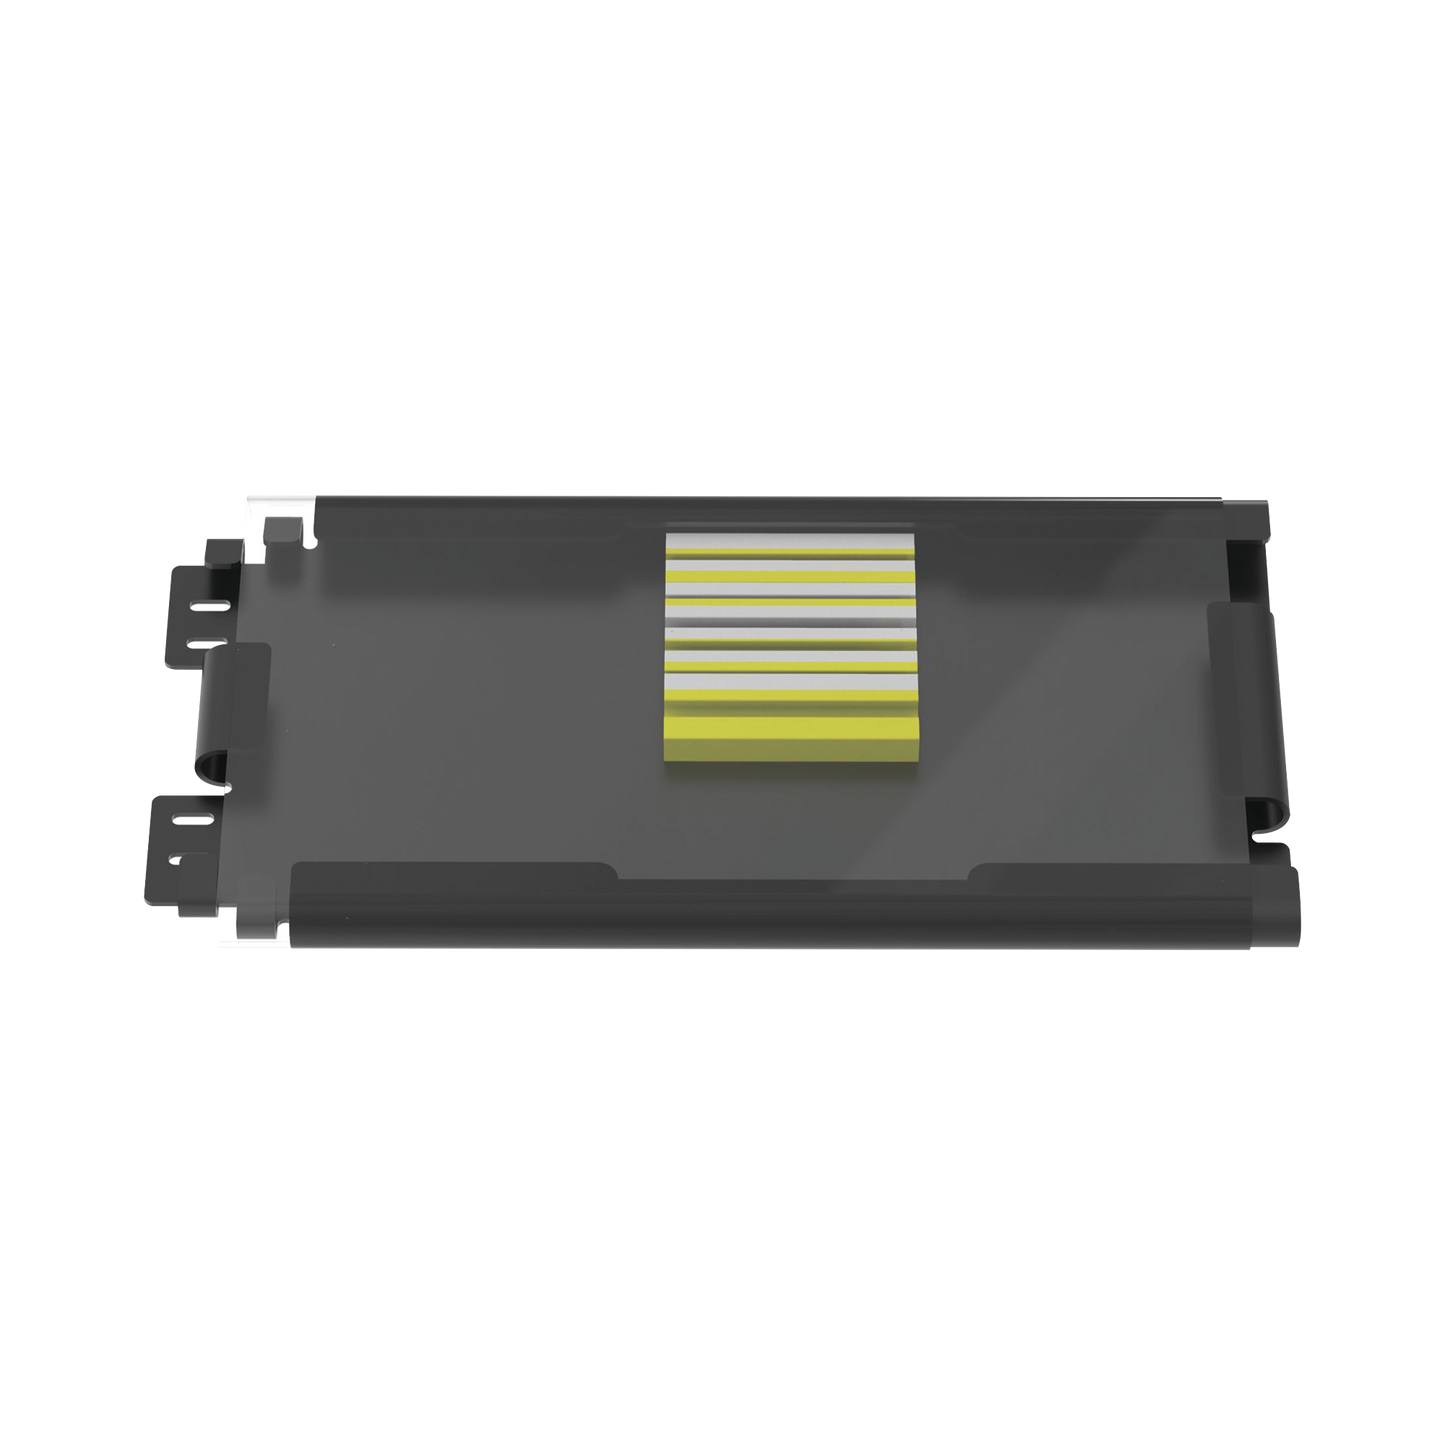 Charola de Empalme para Fibra Óptica, Para Protección de 6 Empalmes de Fusión o Mecánicos, Compatible con los Paneles FWME2